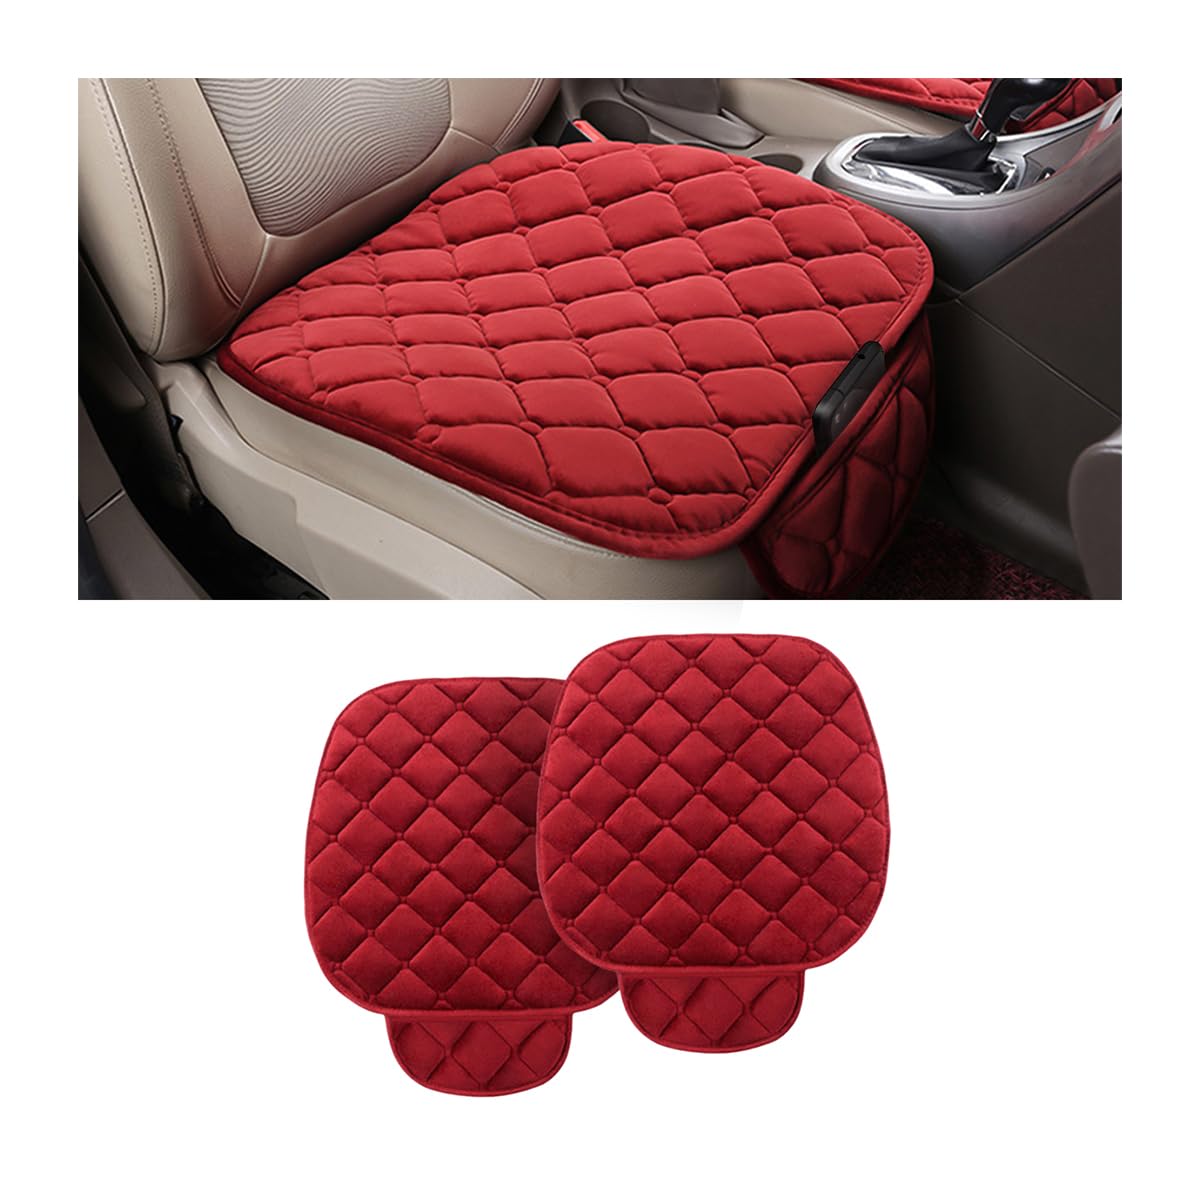 CGEAMDY Universal-Autositzbezug, Sitzkissen, aus Plüsch, rutschfest, für Stuhl, weich, atmungsaktiv, Sitzkissen für die meisten Autos, SUVs (Rot) von CGEAMDY